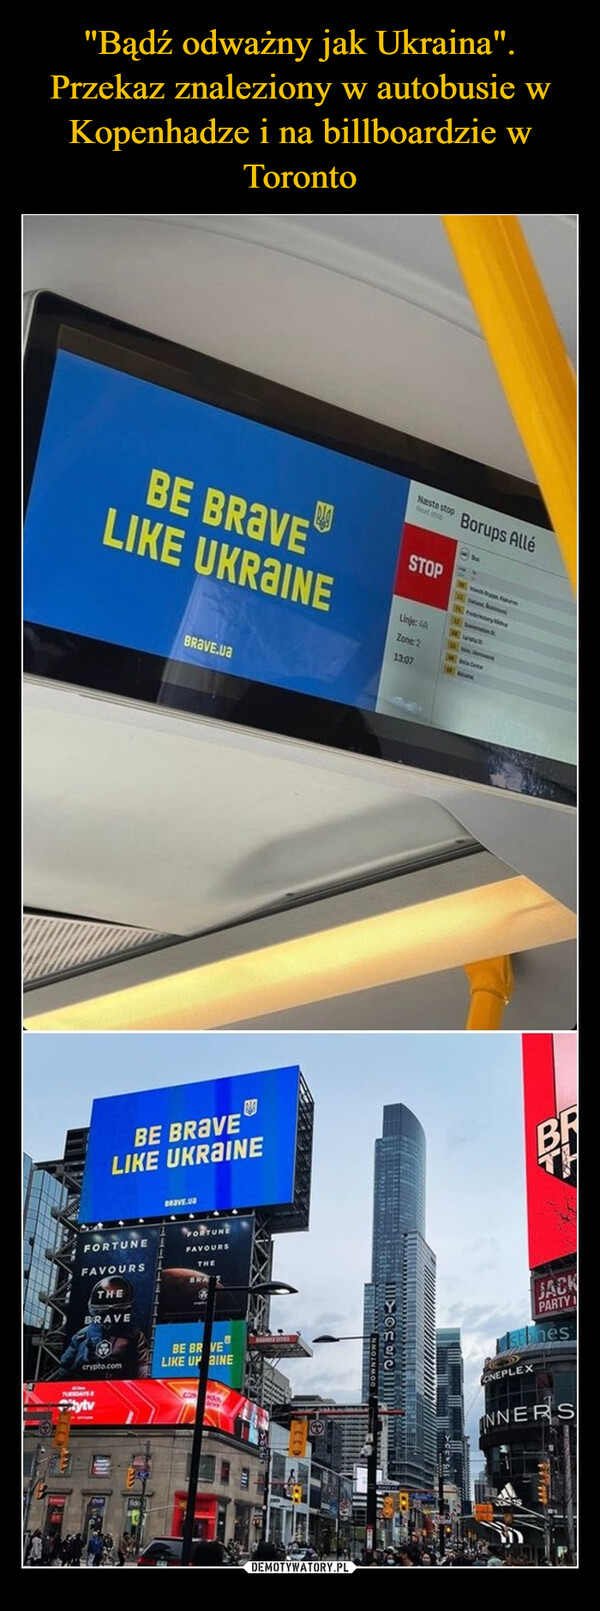 "Bądź odważny jak Ukraina". Przekaz znaleziony w autobusie w Kopenhadze i na billboardzie w Toronto